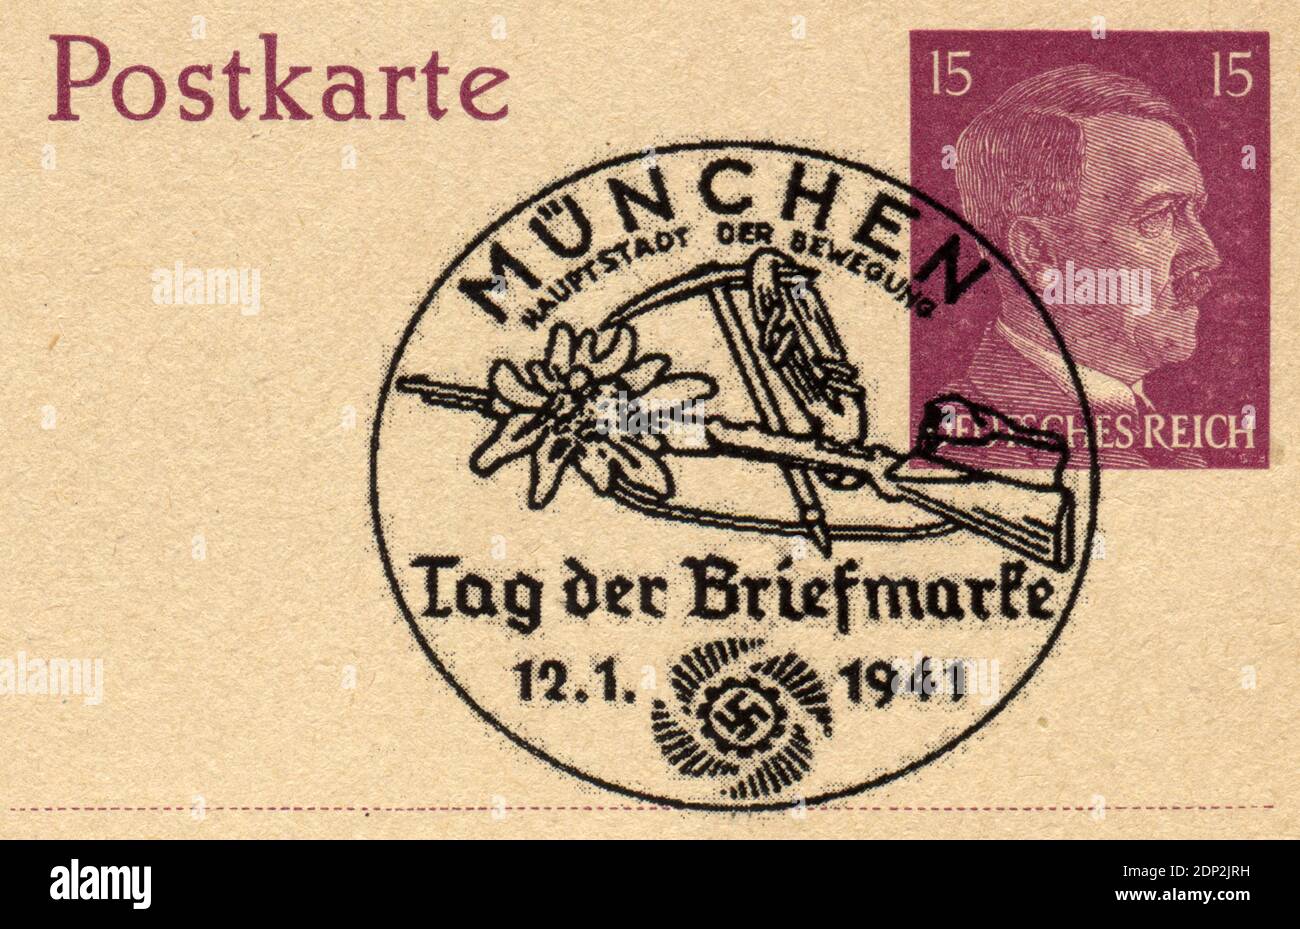 ALLEMAGNE - VERS 1941: Timbre-poste imprimé en Allemagne, a montré le portrait d'Adolf Hitler - un homme politique allemand, chef (Fuehrer) de l'Allemagne et du Parti nazi, vers 1941 Banque D'Images